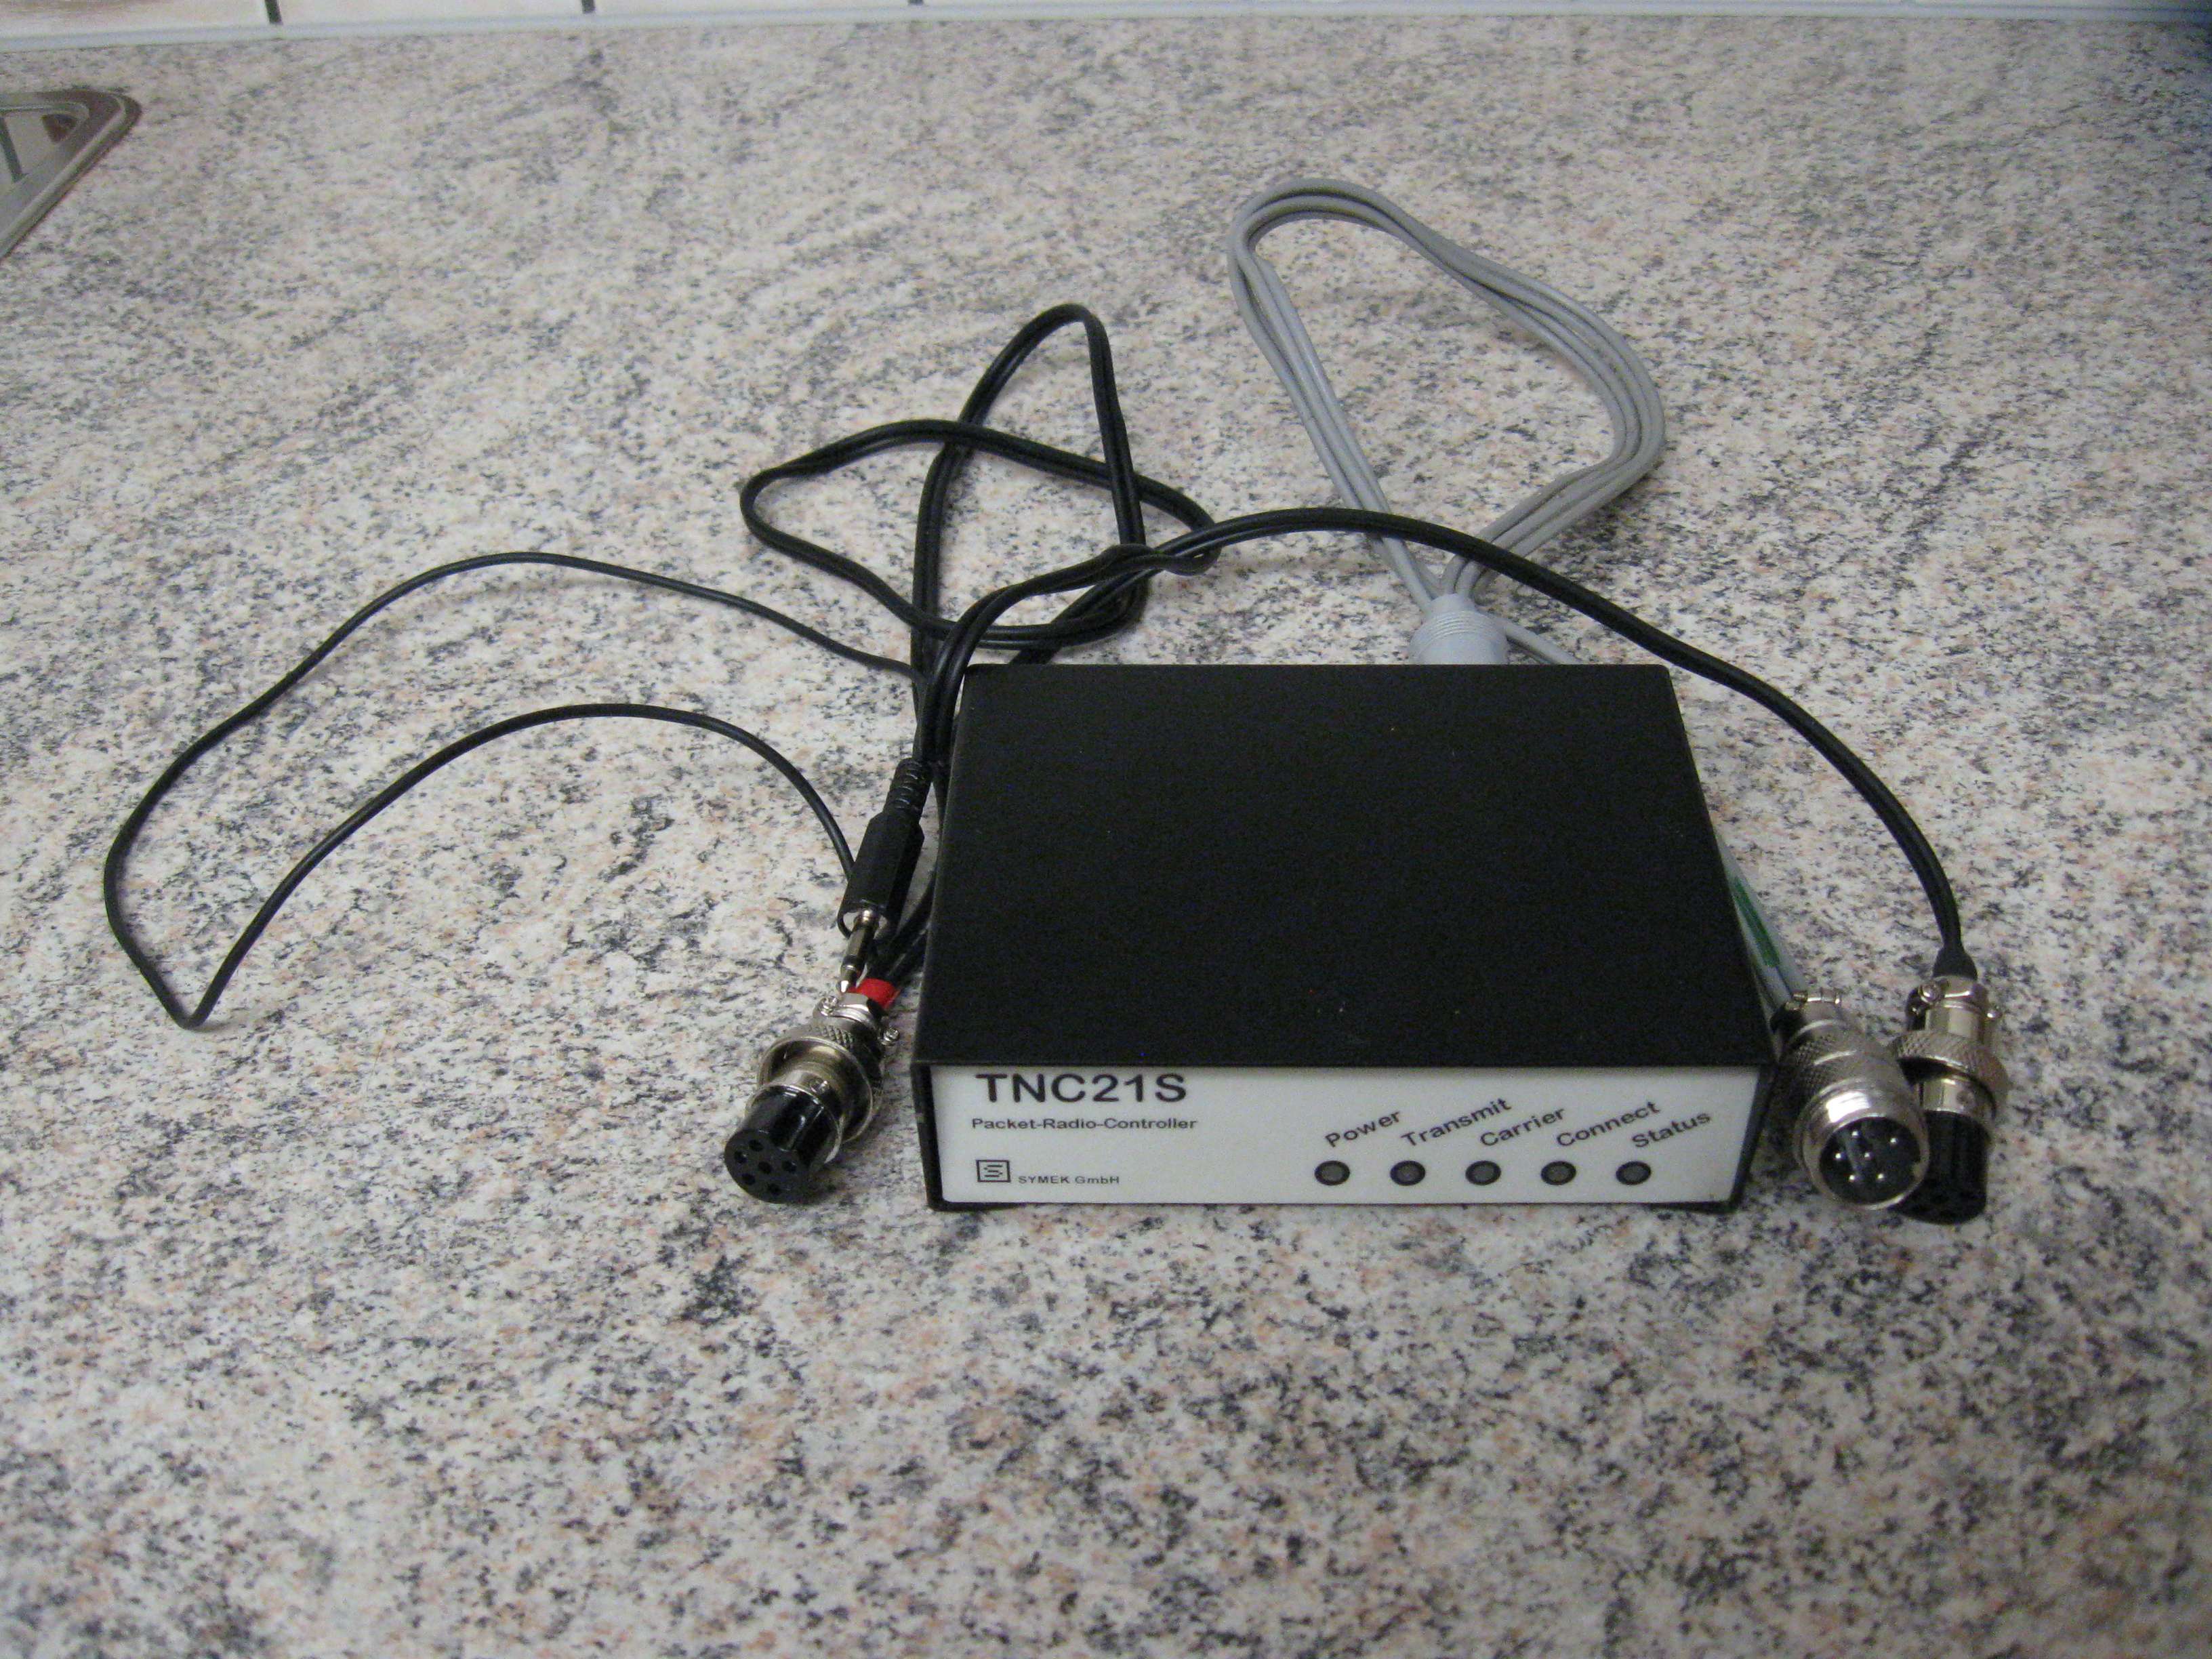 TNC21S 1200 Baud AFSK Packet-Radio-TNC von Symek mit Adapterkabel